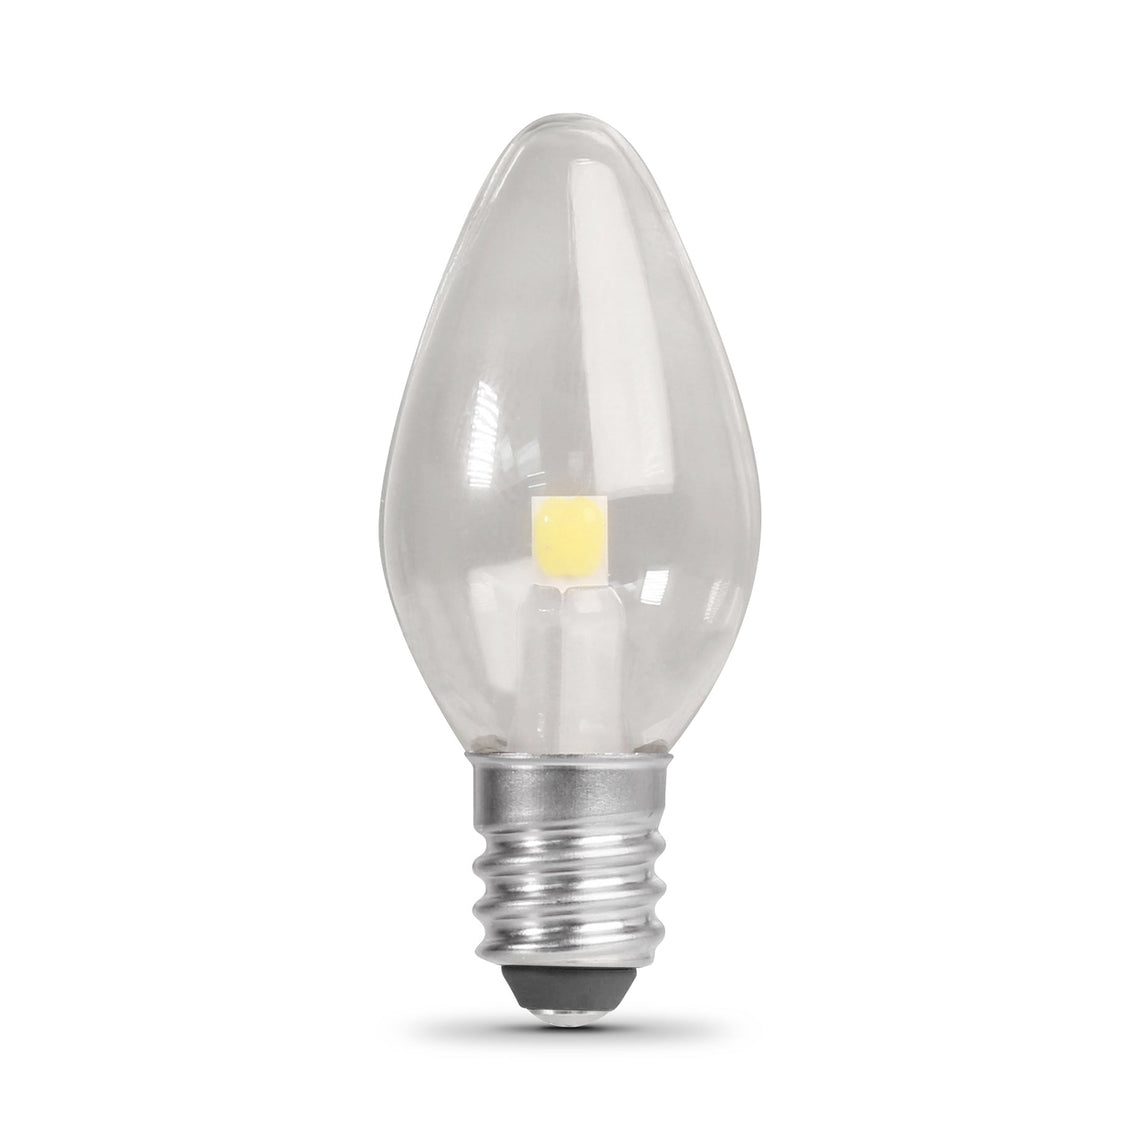 C7 LED Night Light Bulb, 7 Watt, Candelabra base, E12, 4000k